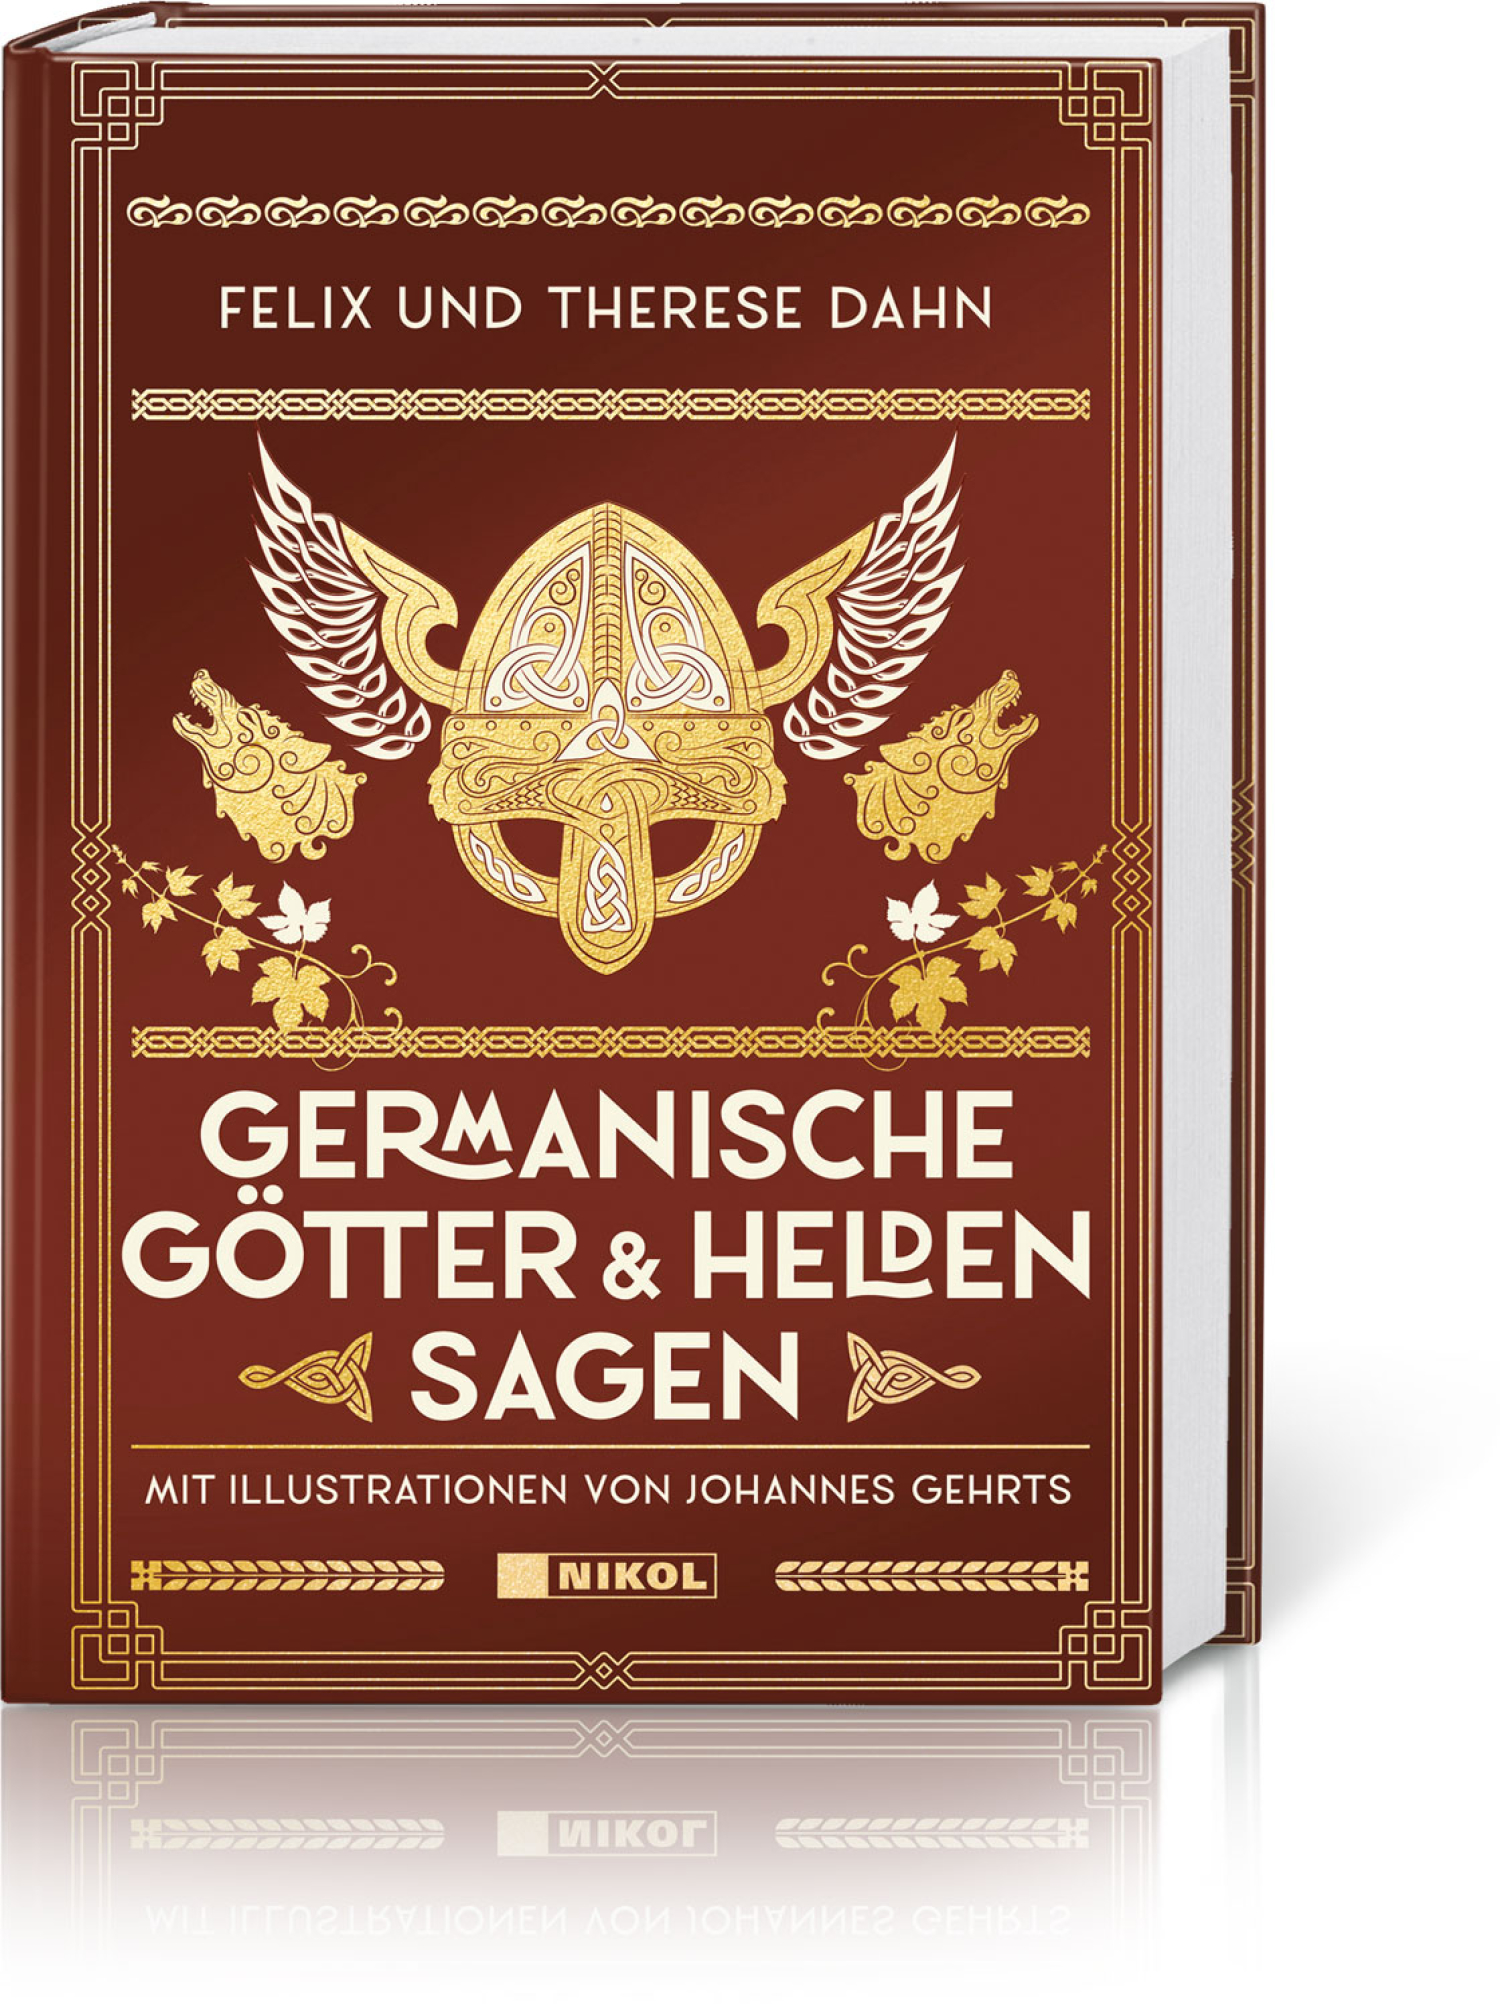 Germanische Götter- und Heldensagen, Produktbild 1